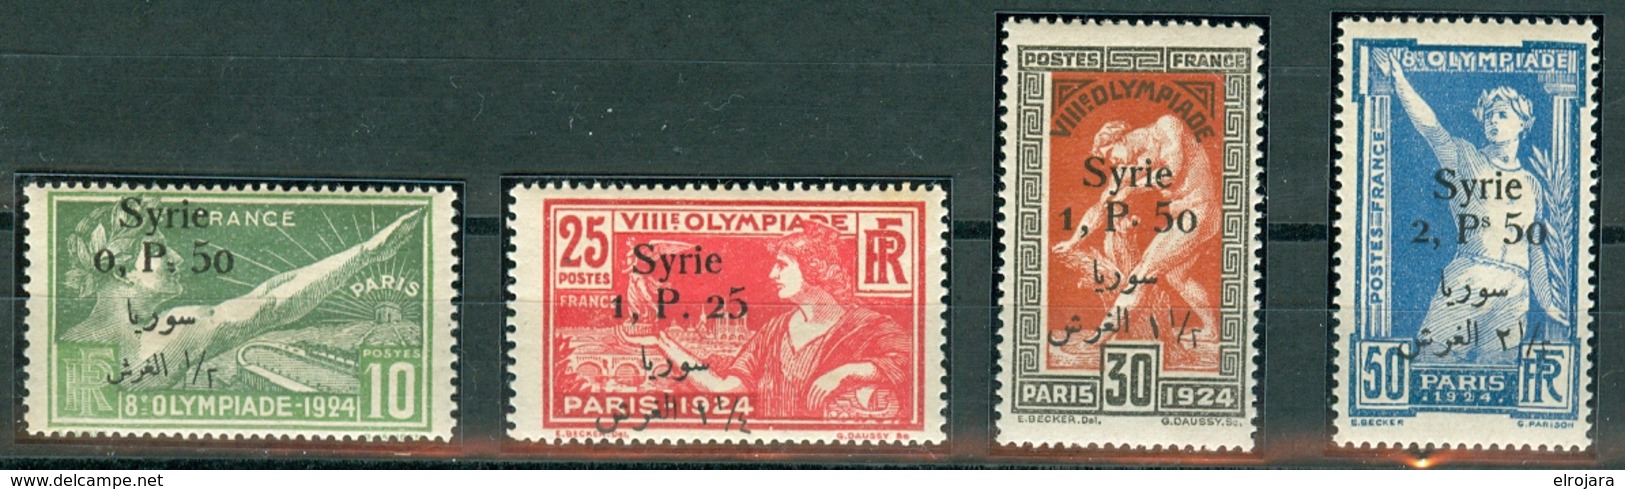 SYRIE Set Mint Without Hinge - Ete 1924: Paris